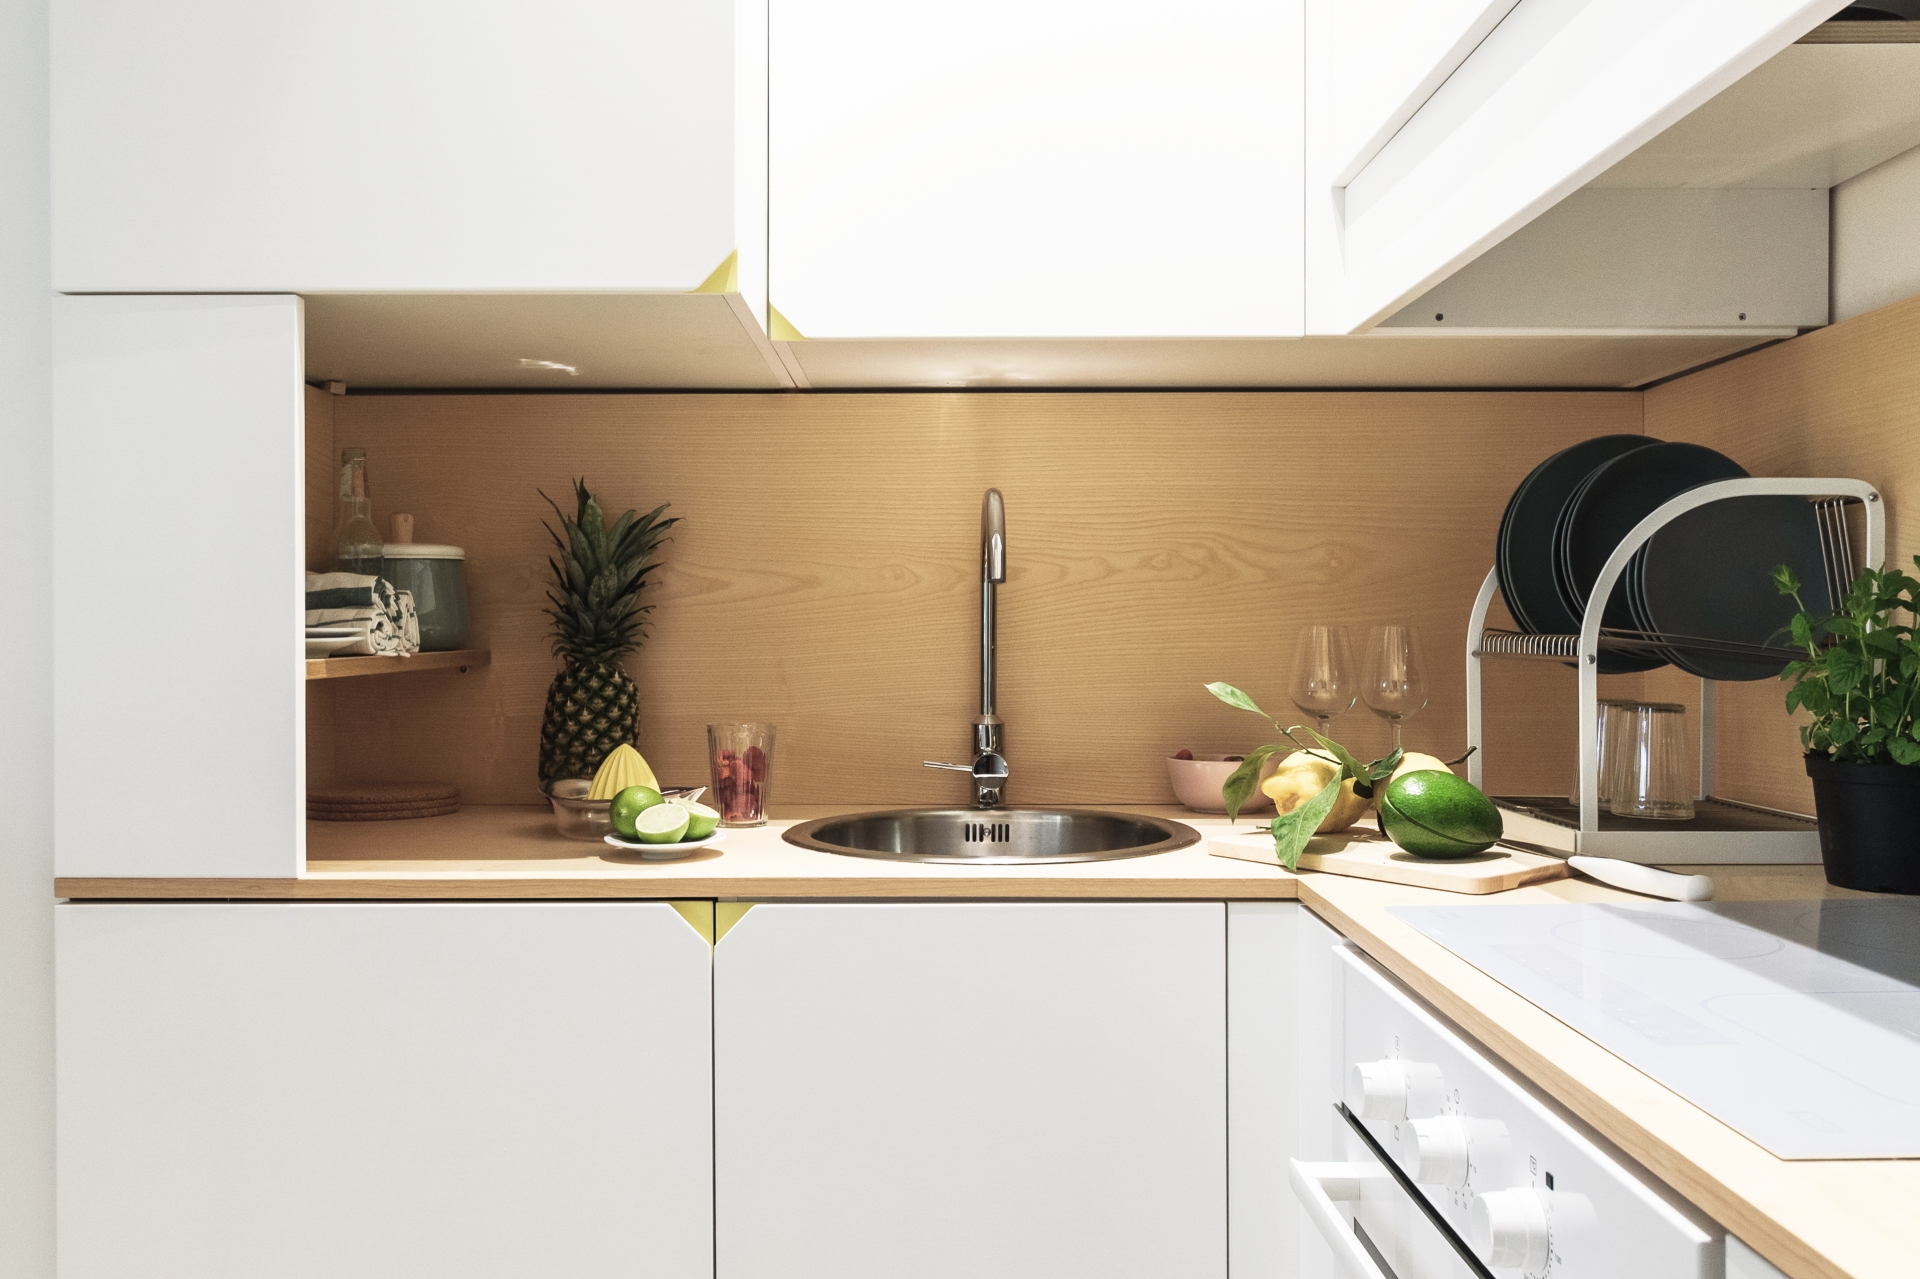 Khu vực bếp nổi bật với hệ tủ lưu trữ màu trắng và backsplash ốp gỗ sáng màu.